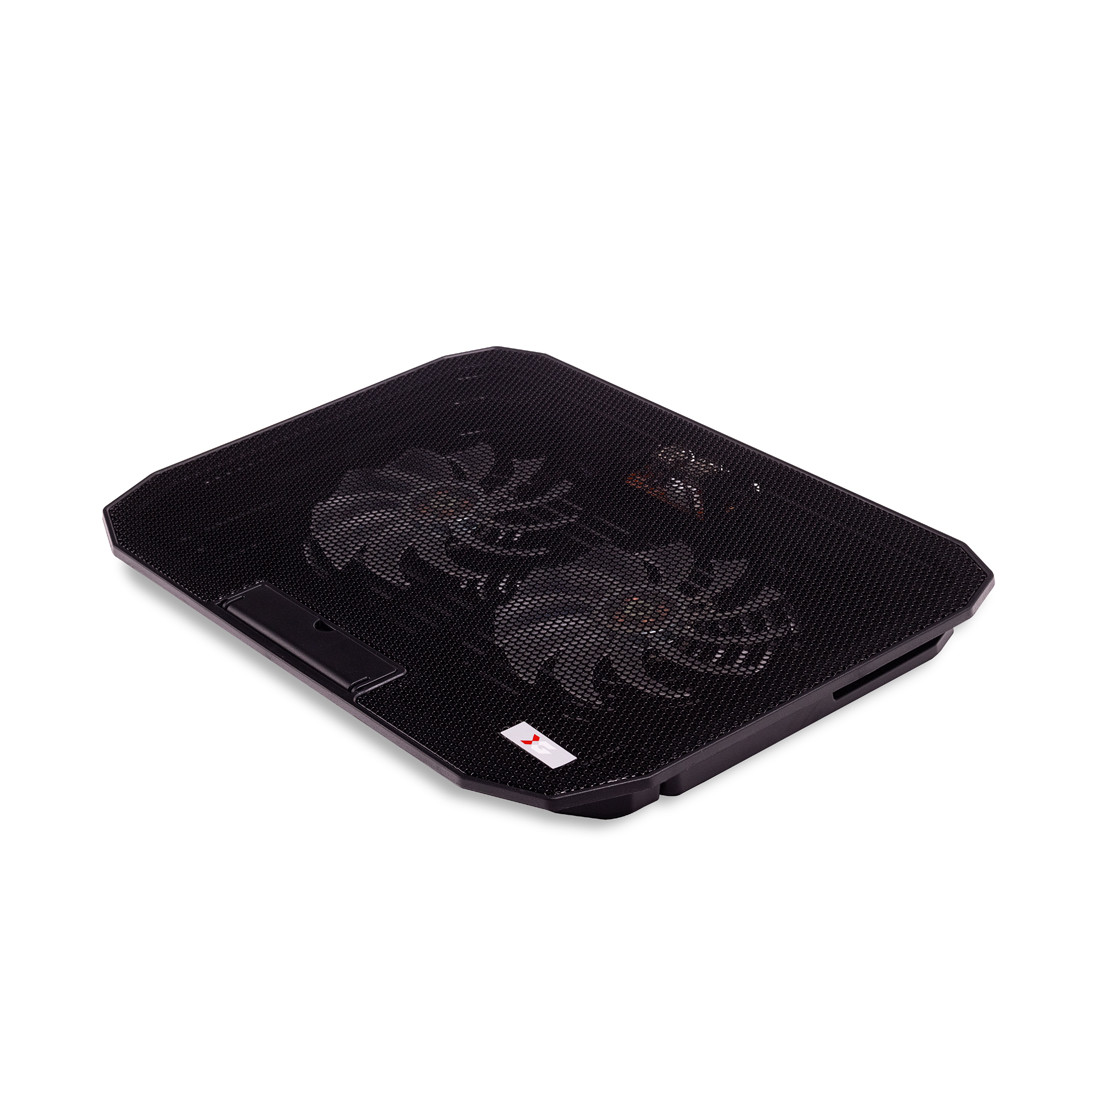 Охлаждающая подставка для ноутбука X-Game X6 15,6", фото 1